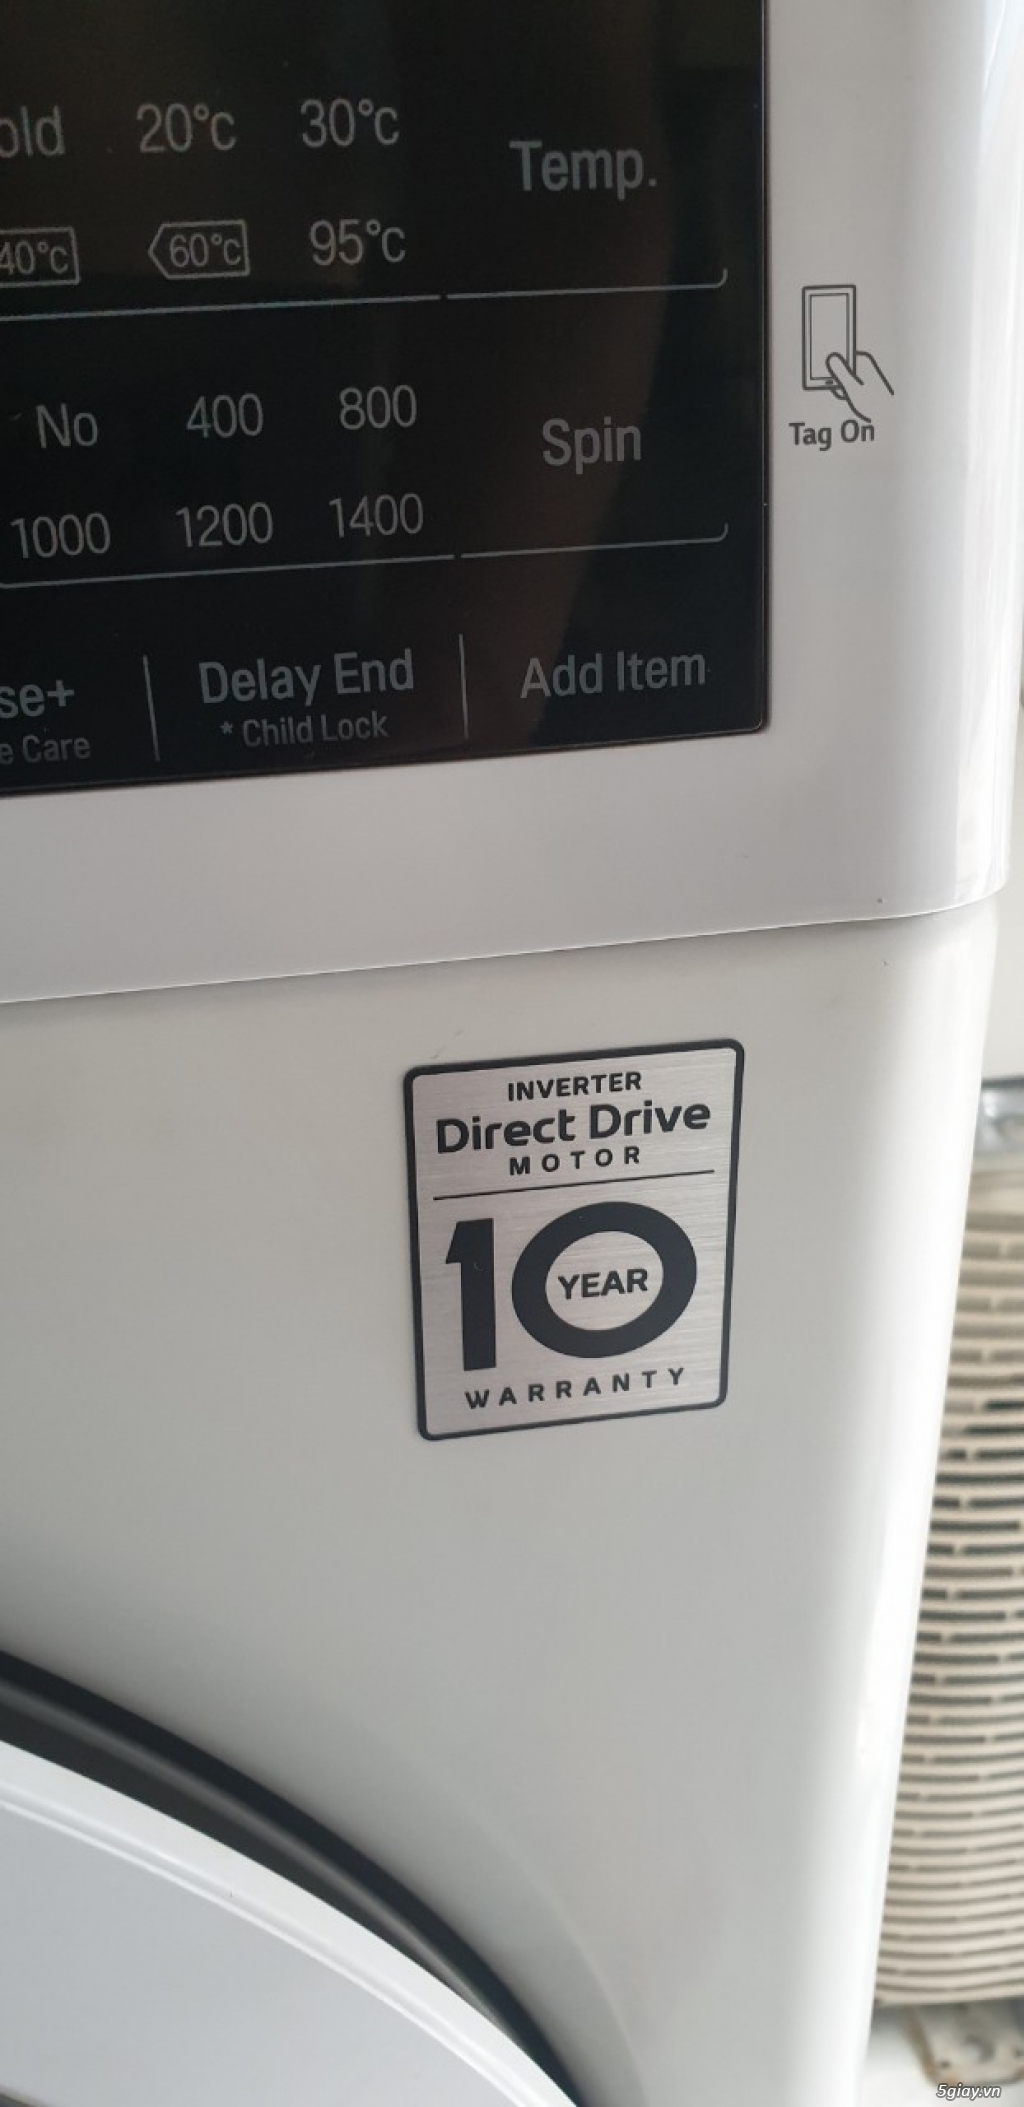 Bán Lại Máy giặt LG Inverter 7.5 kg cửa ngang mới 97% giá 4tr500k - 3